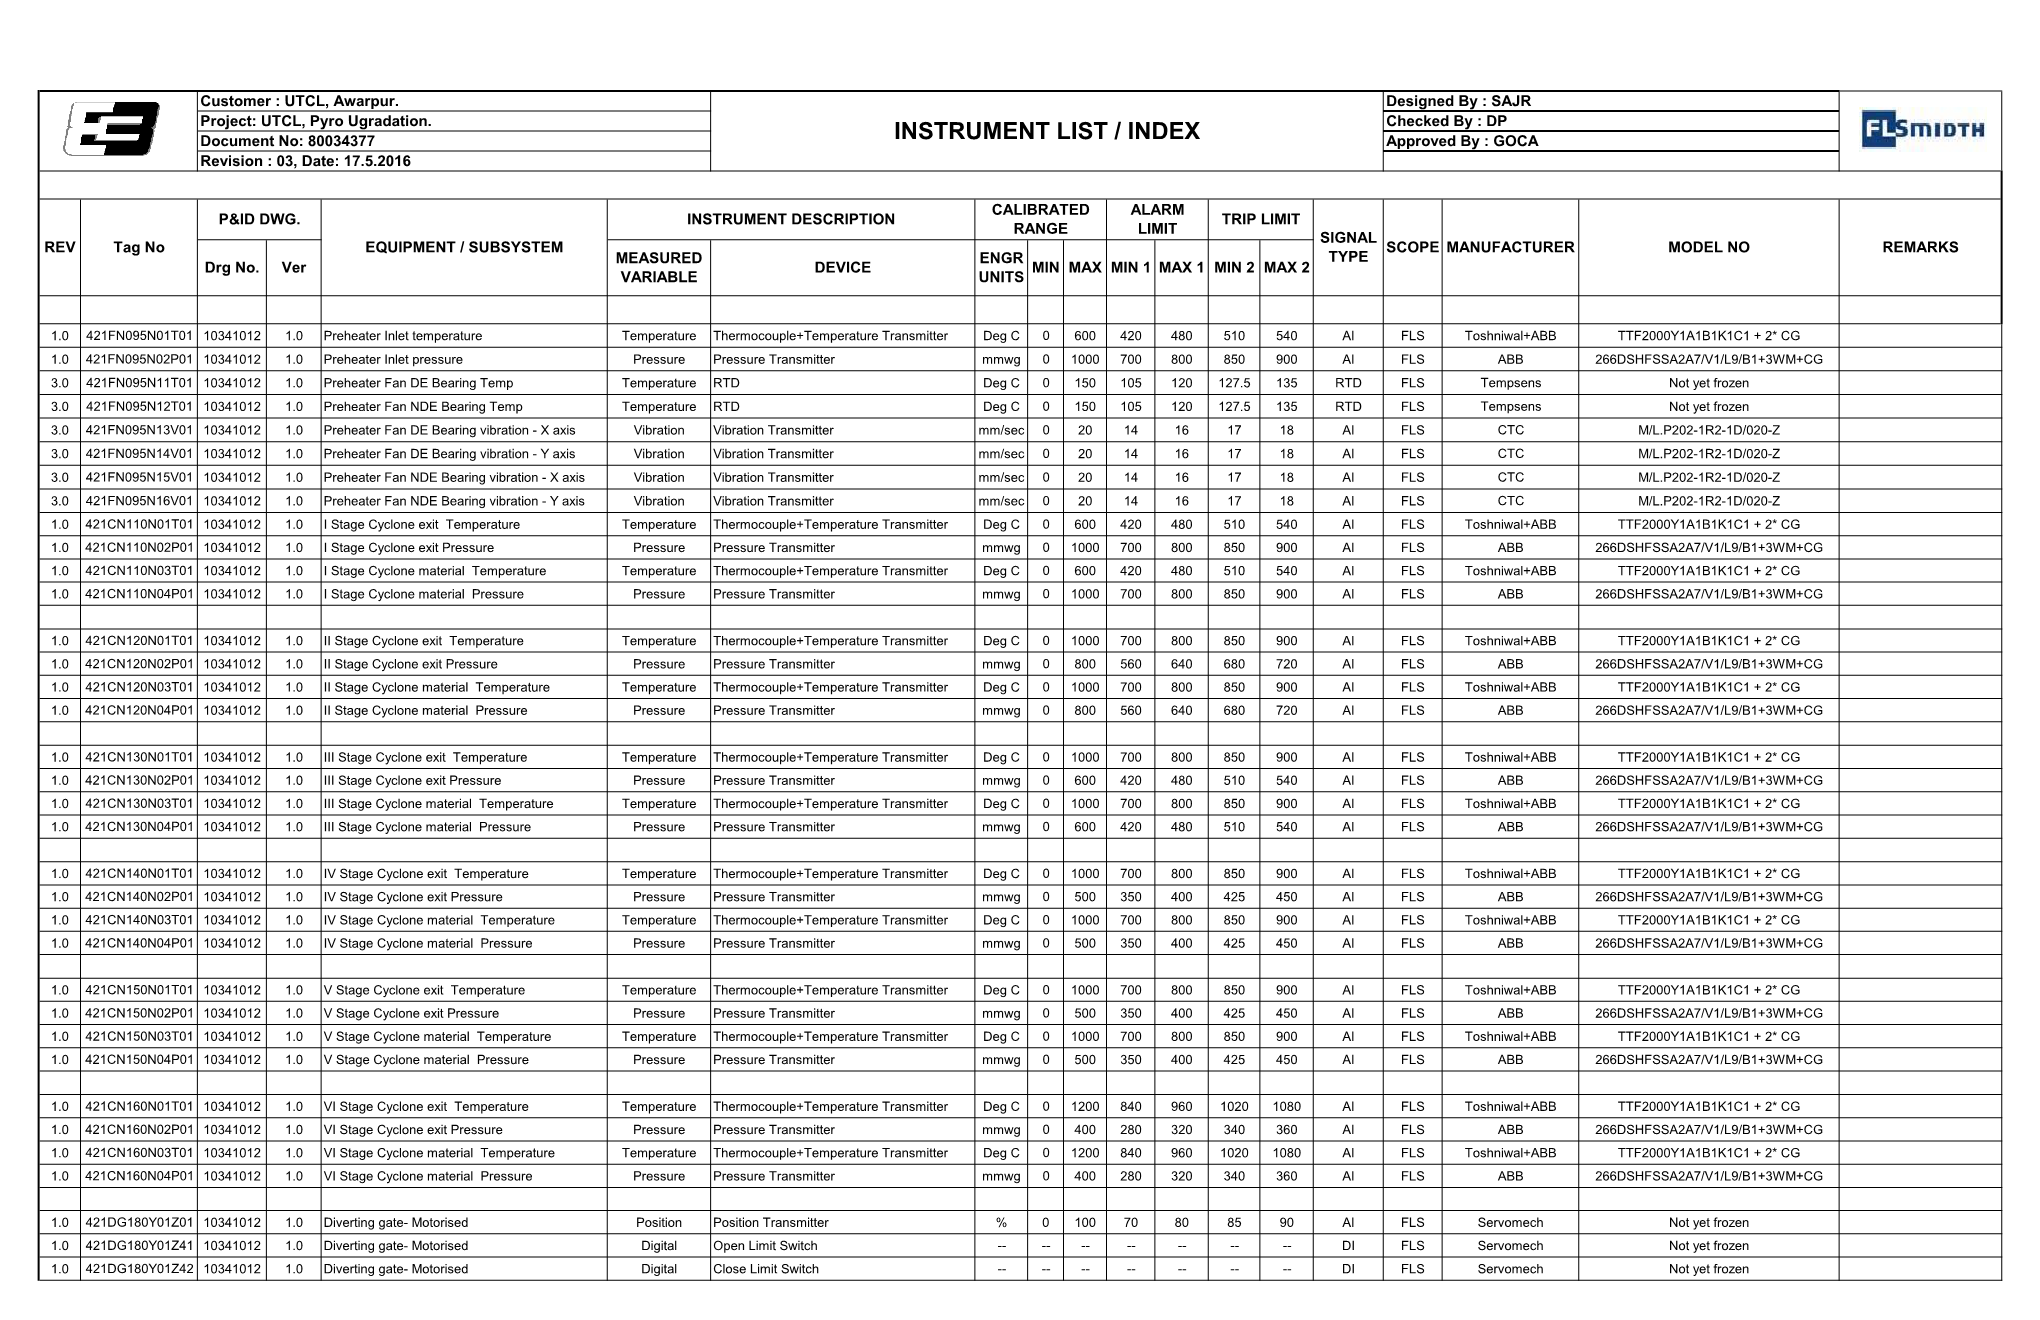 Preparation of Instrument List / Index 